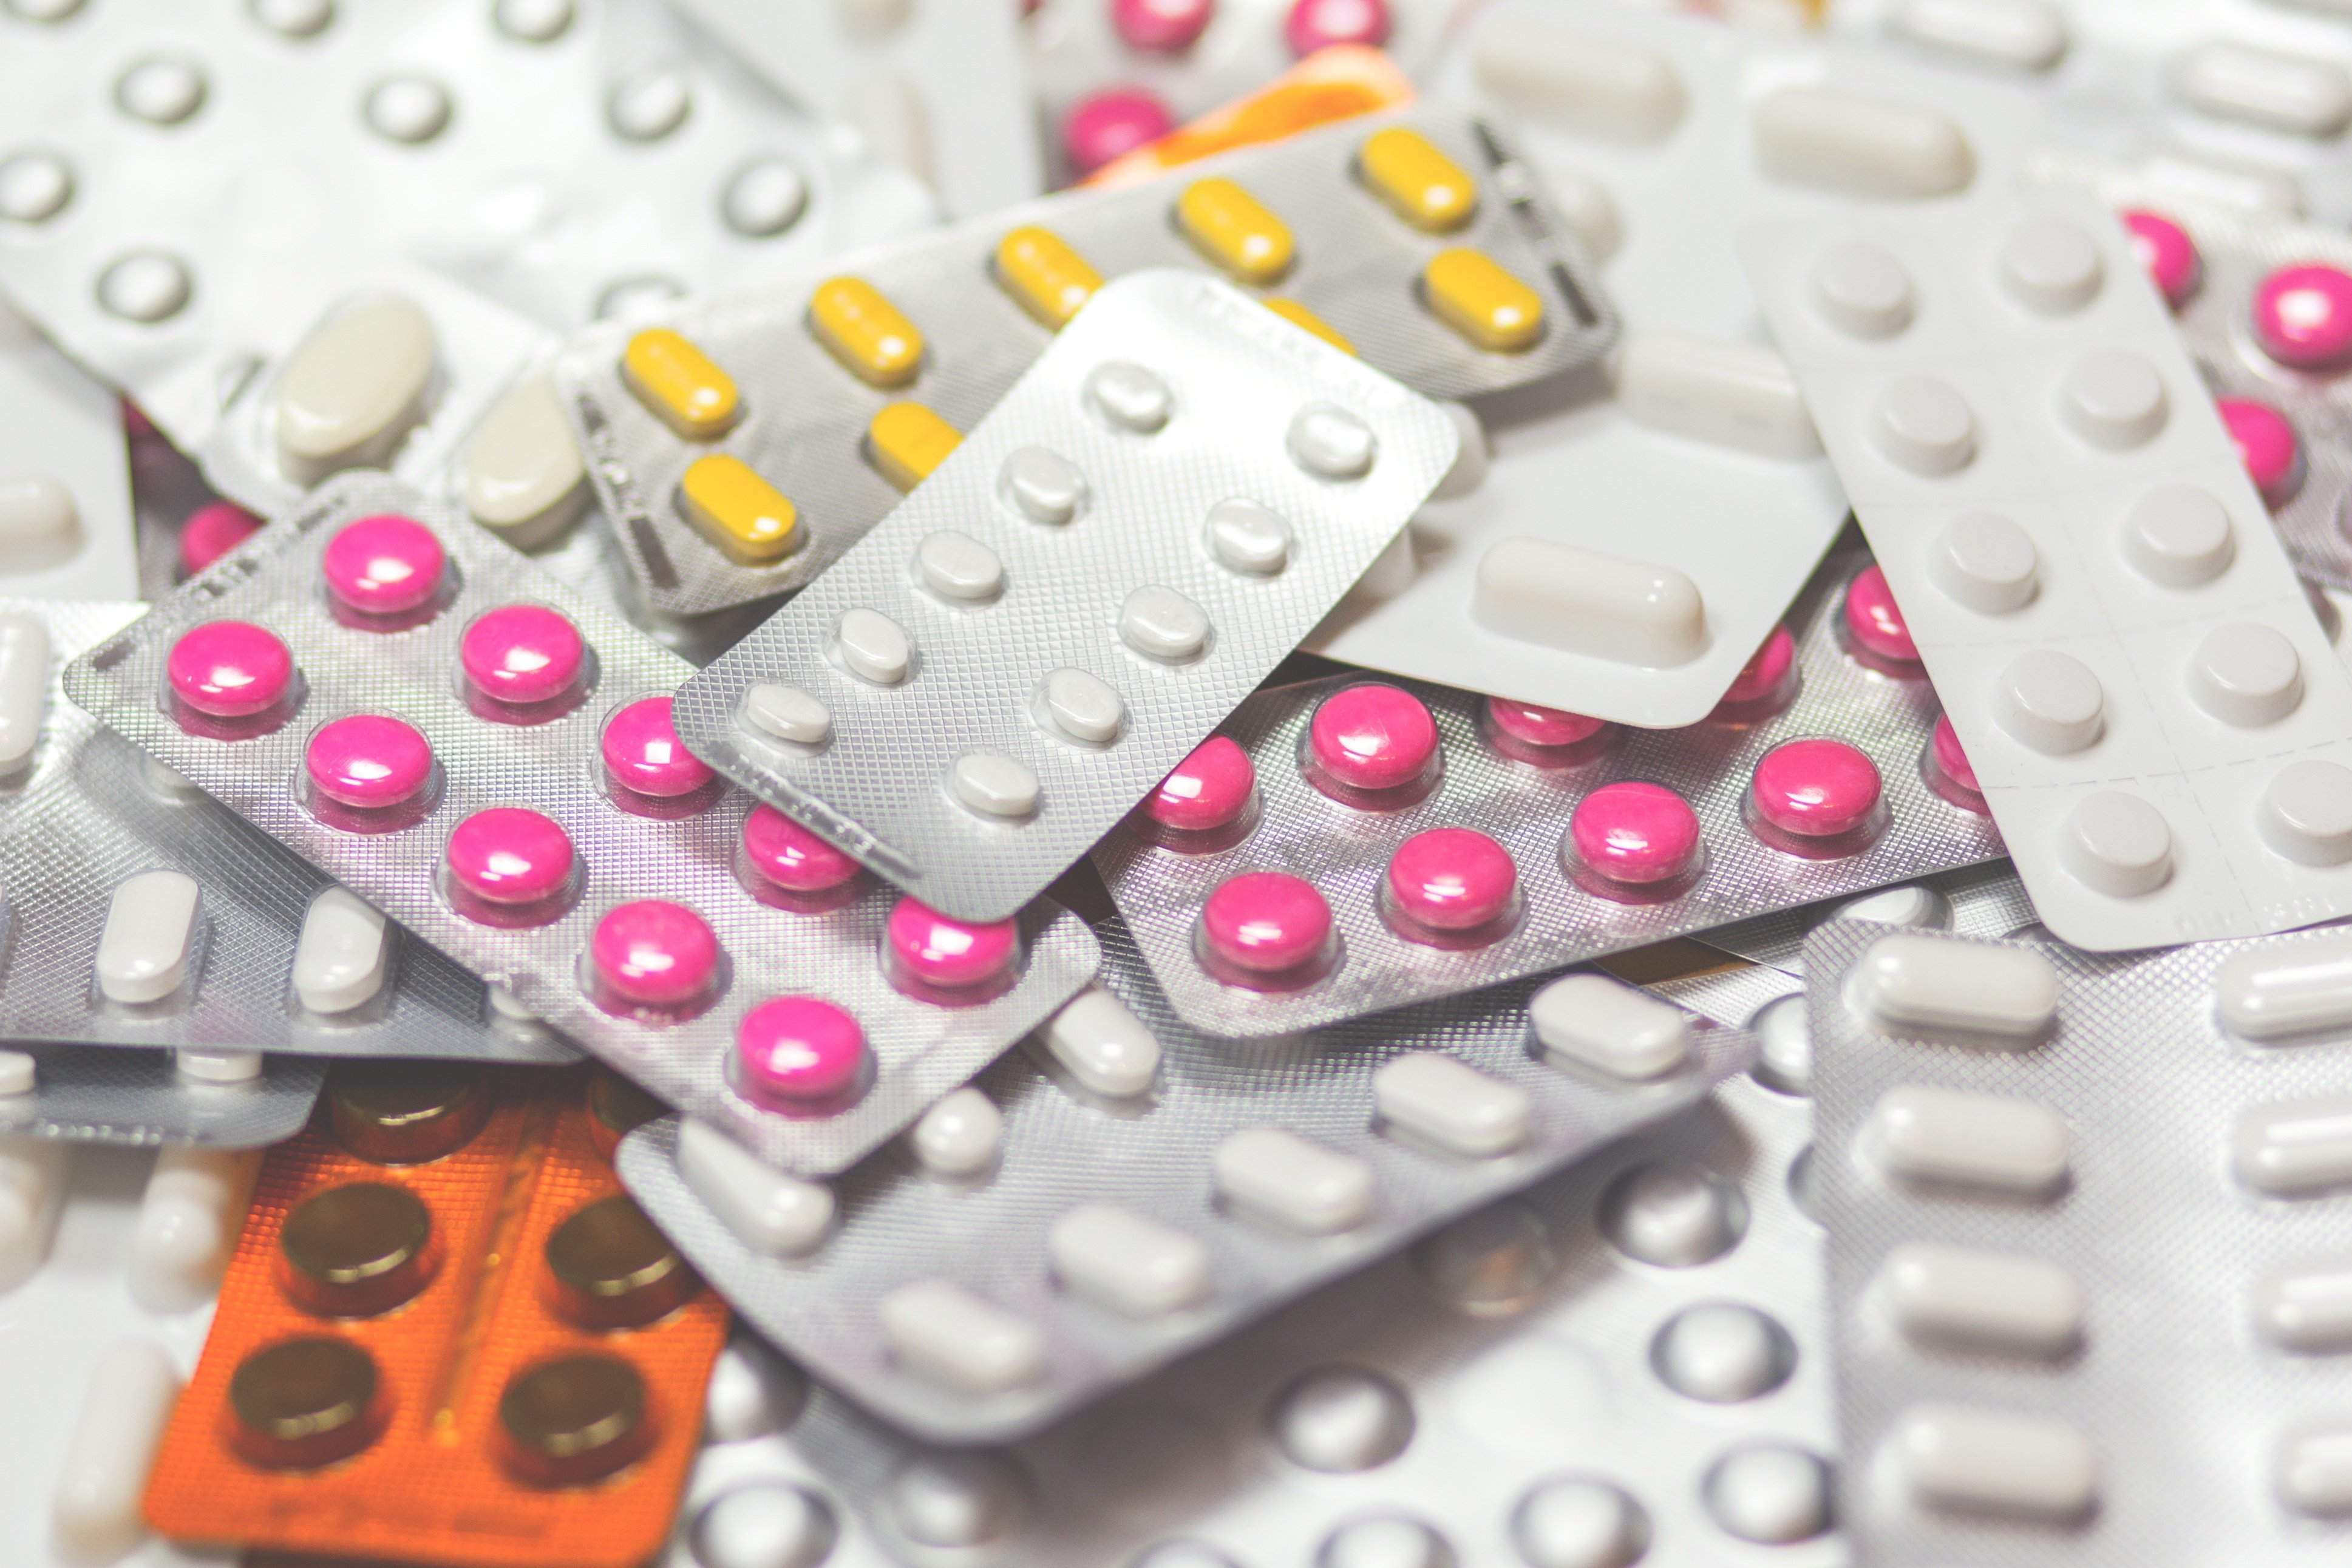 L'1 de gener baixaran els preus de més de 1.200 medicaments a les farmàcies